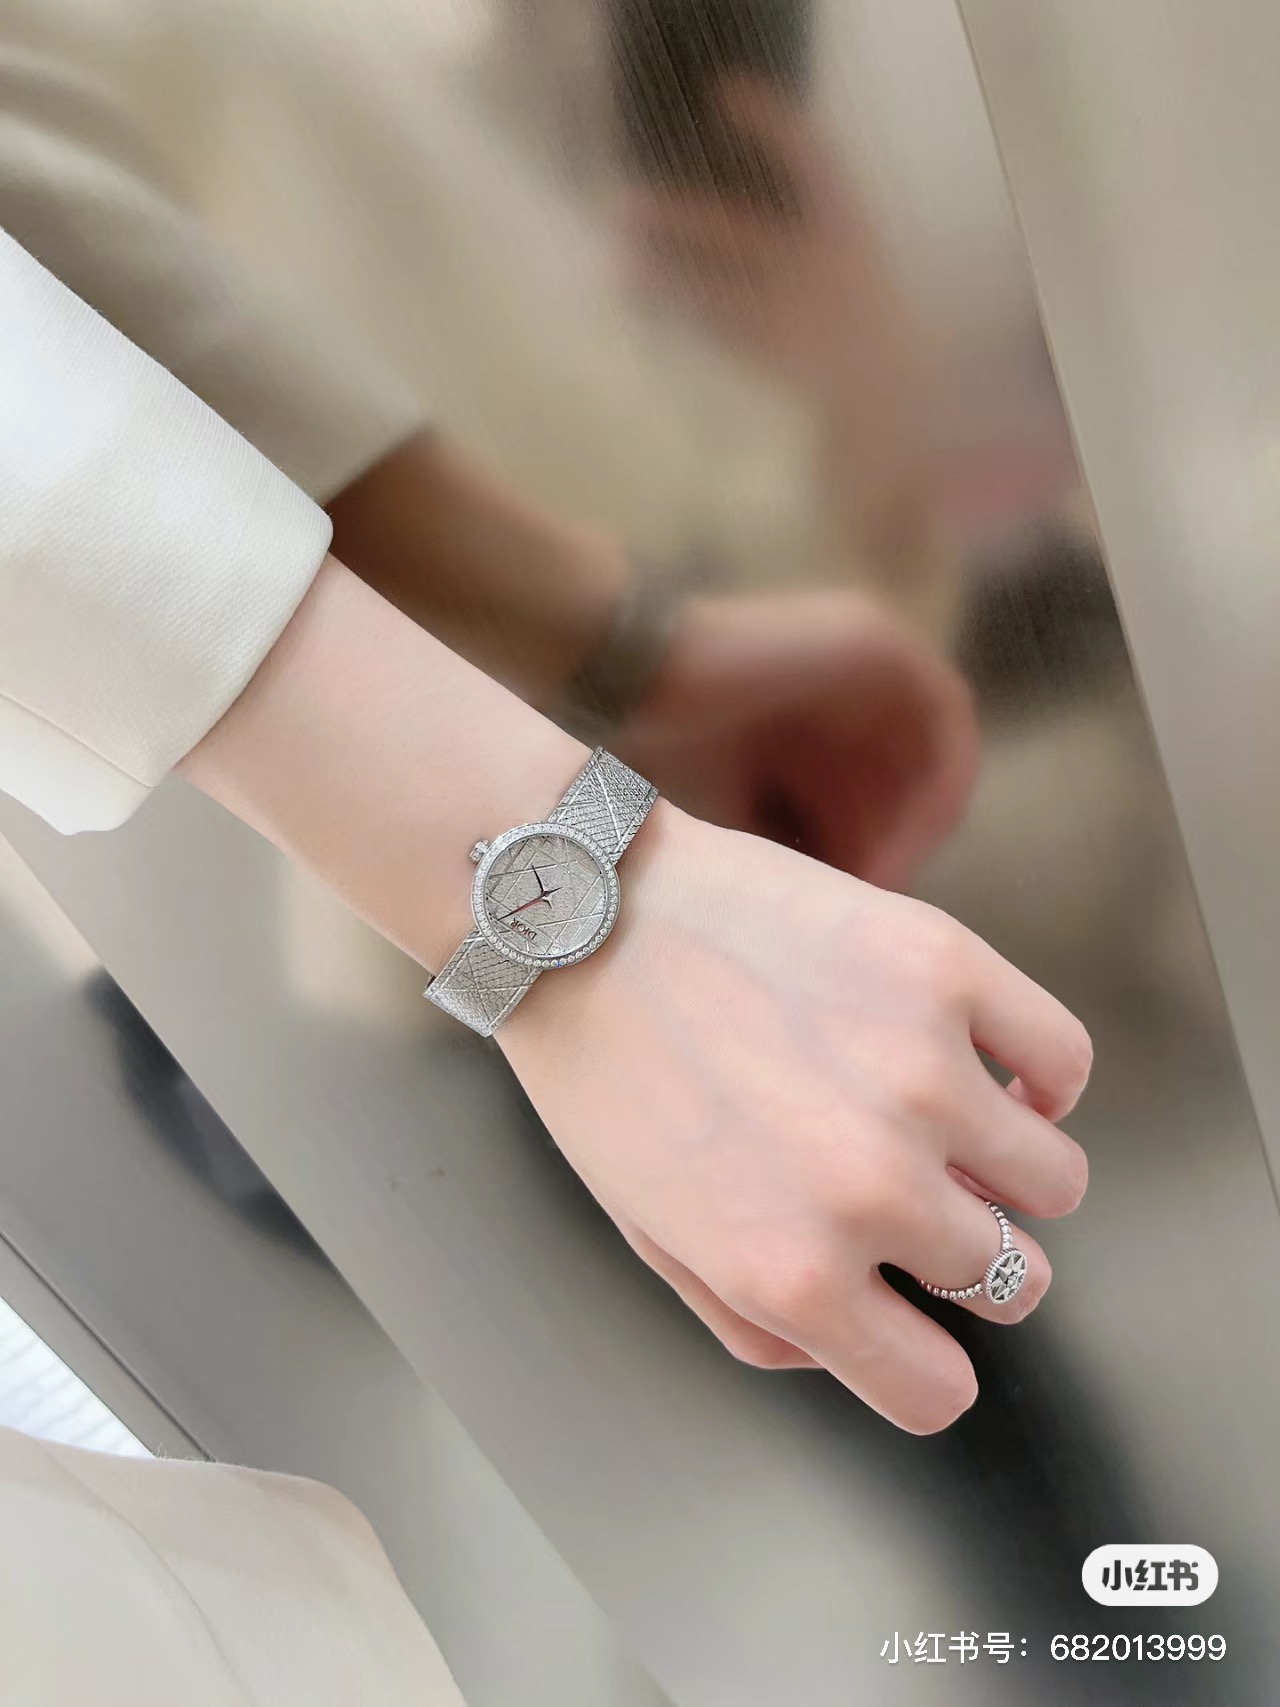 最新作 人気定番 爆買い 腕時計 ディオール偽物 優美な曲線デザイン ダイヤモンド_5